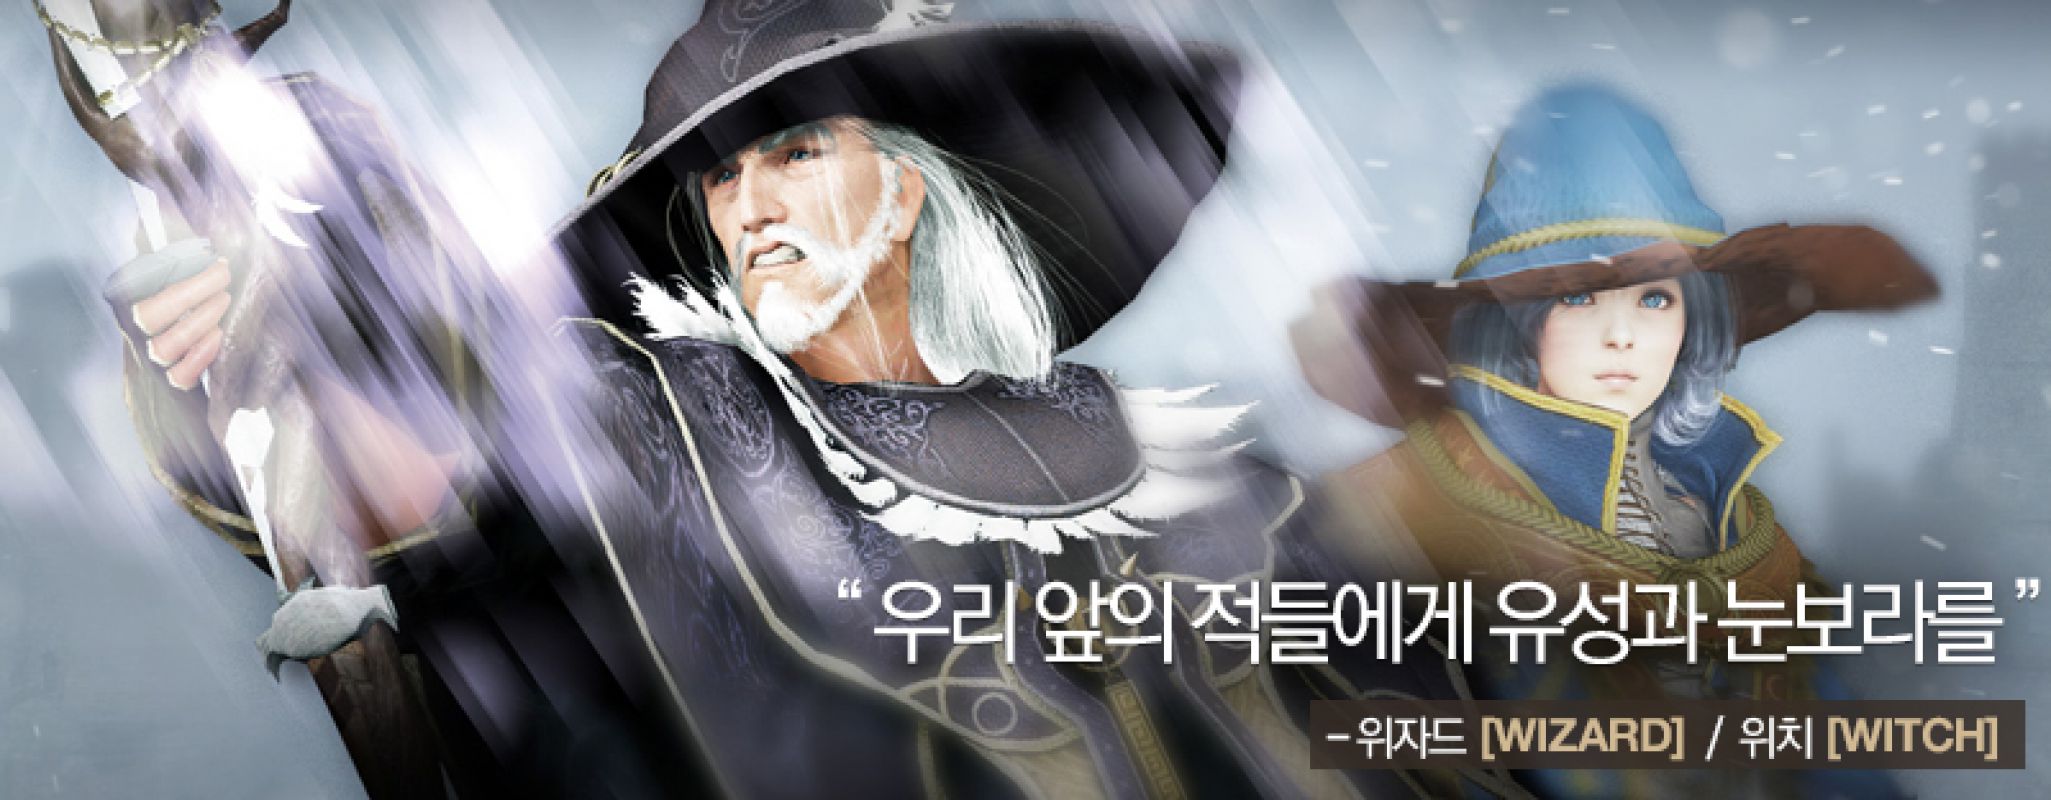 Wizard появится на корейских серверах Black Desert 28 мая